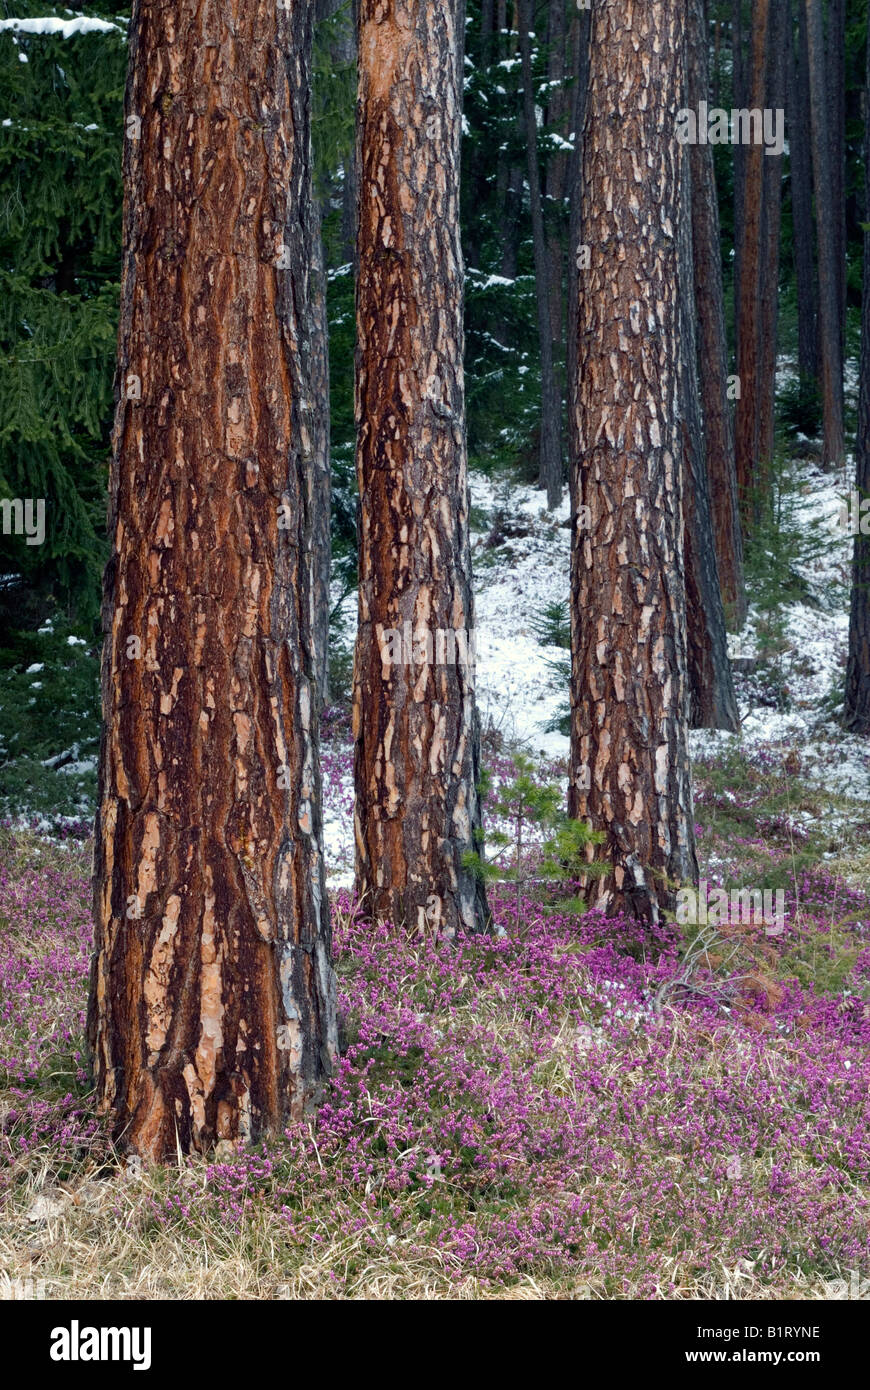 Le pin sylvestre (Pinus sylvestris), Winter Heath (Erica herbacea), Mieminger Plateau, Wildermieming, Tyrol, Autriche, Europe Banque D'Images